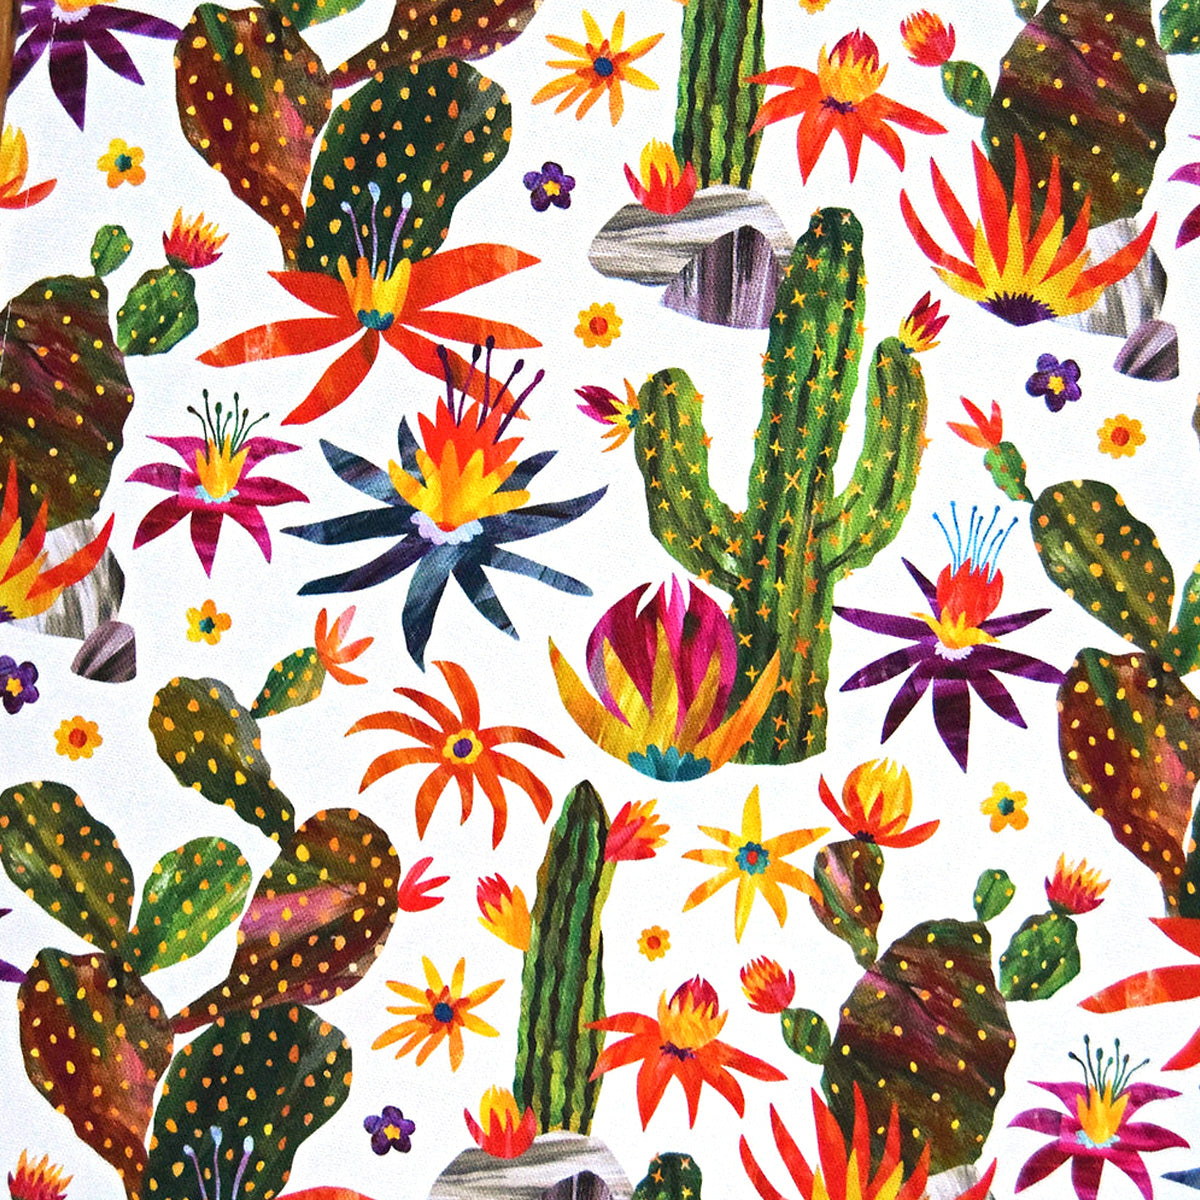 Geschirrhandtuch Kaktus